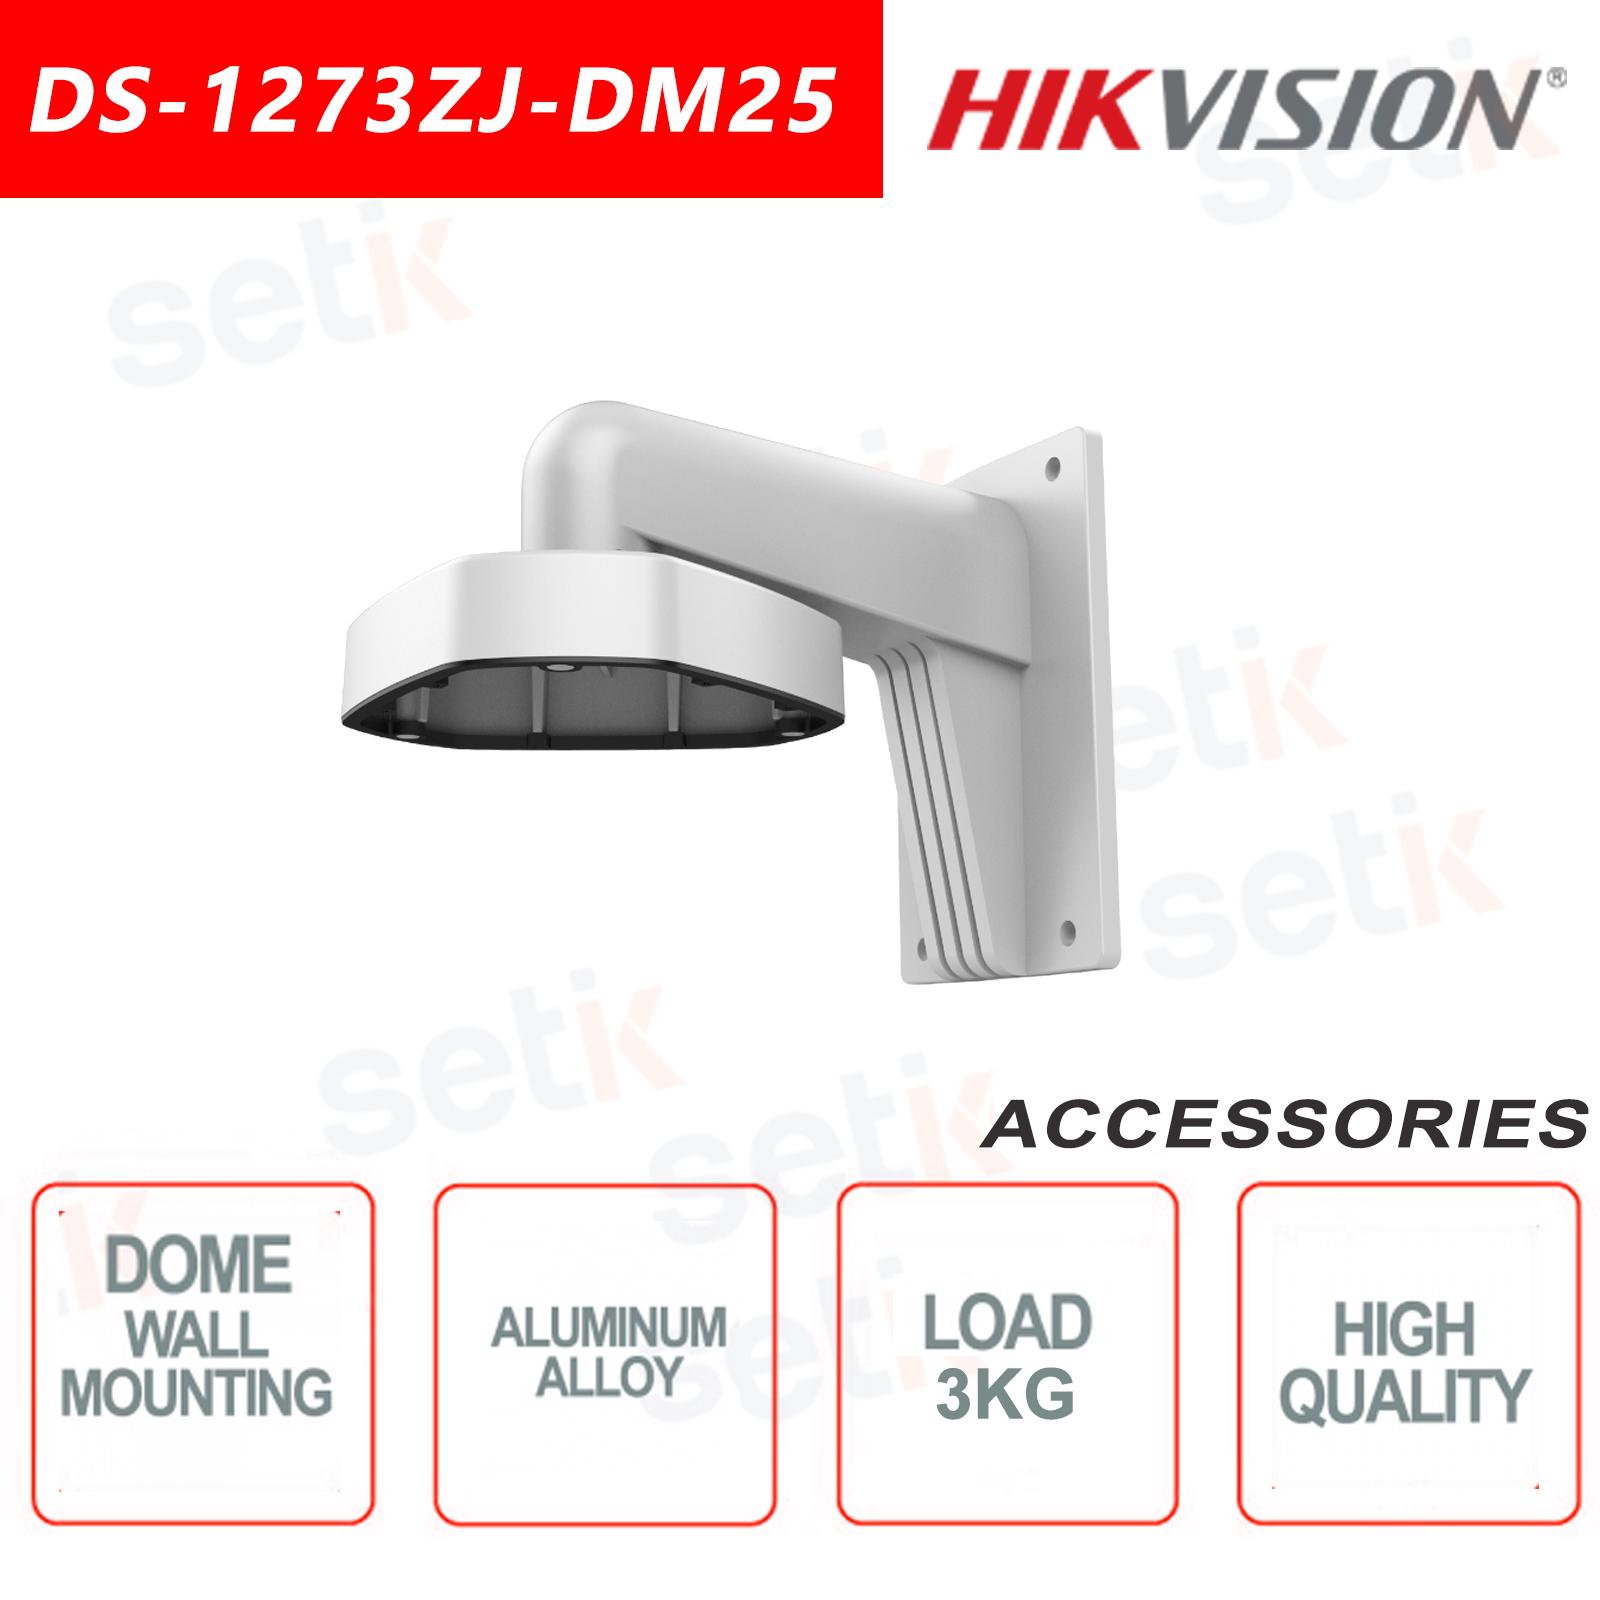 Apto para domo Hikvision DS-1273ZJ-DM25-M1 Apto para uso en Soporte de pared